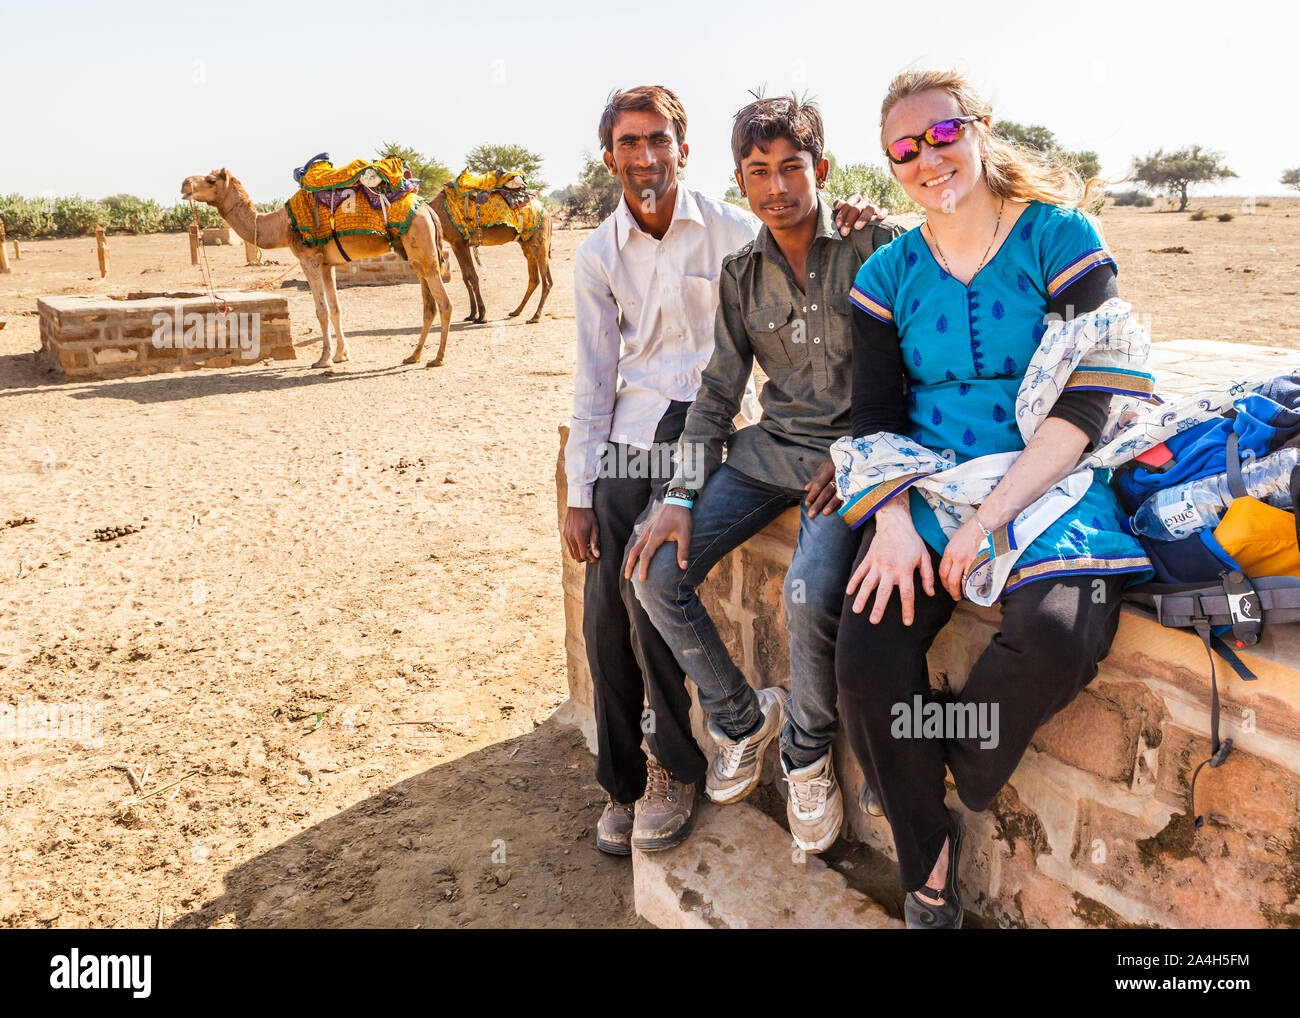 Ein tourist für ein Foto mit ihren zwei Kamel Fahrer/Führer auf einem Kamel trek Tour posieren. Kanoi, Rajasthan, Indien. Stockfoto